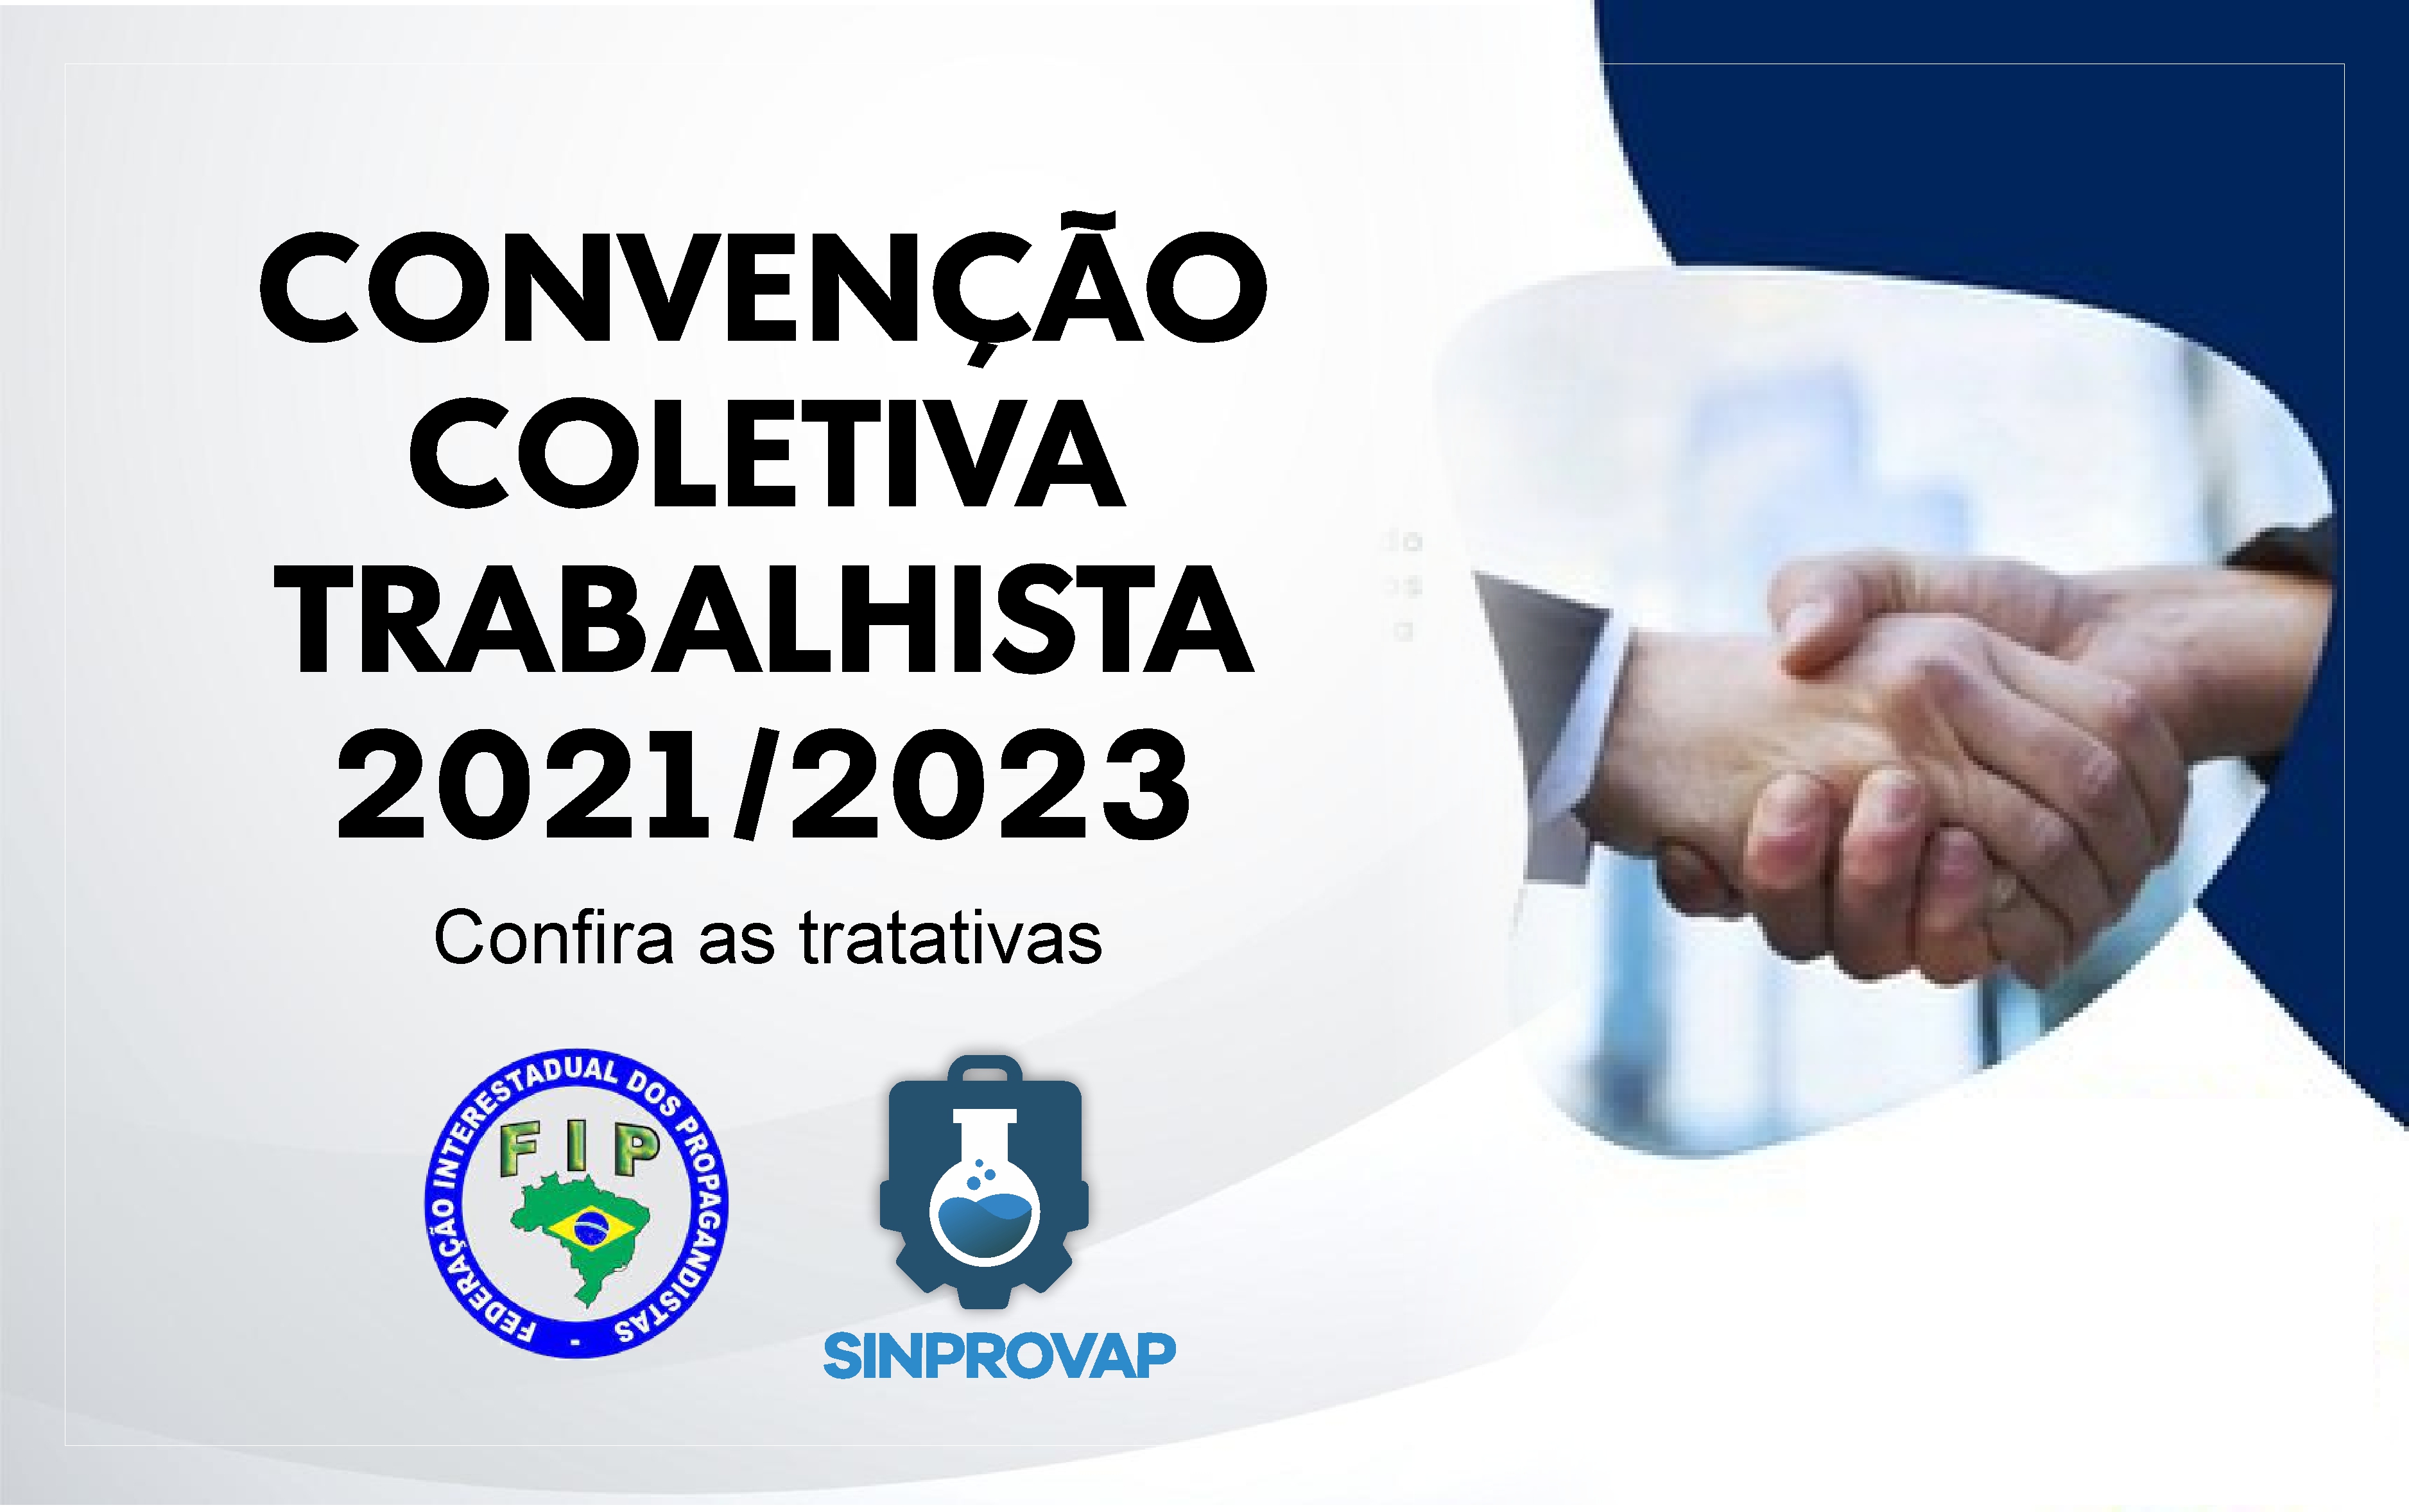 CONVENÇÃO  COLETIVA TRABALHISTA 2021/2023 – Confira as tratativas